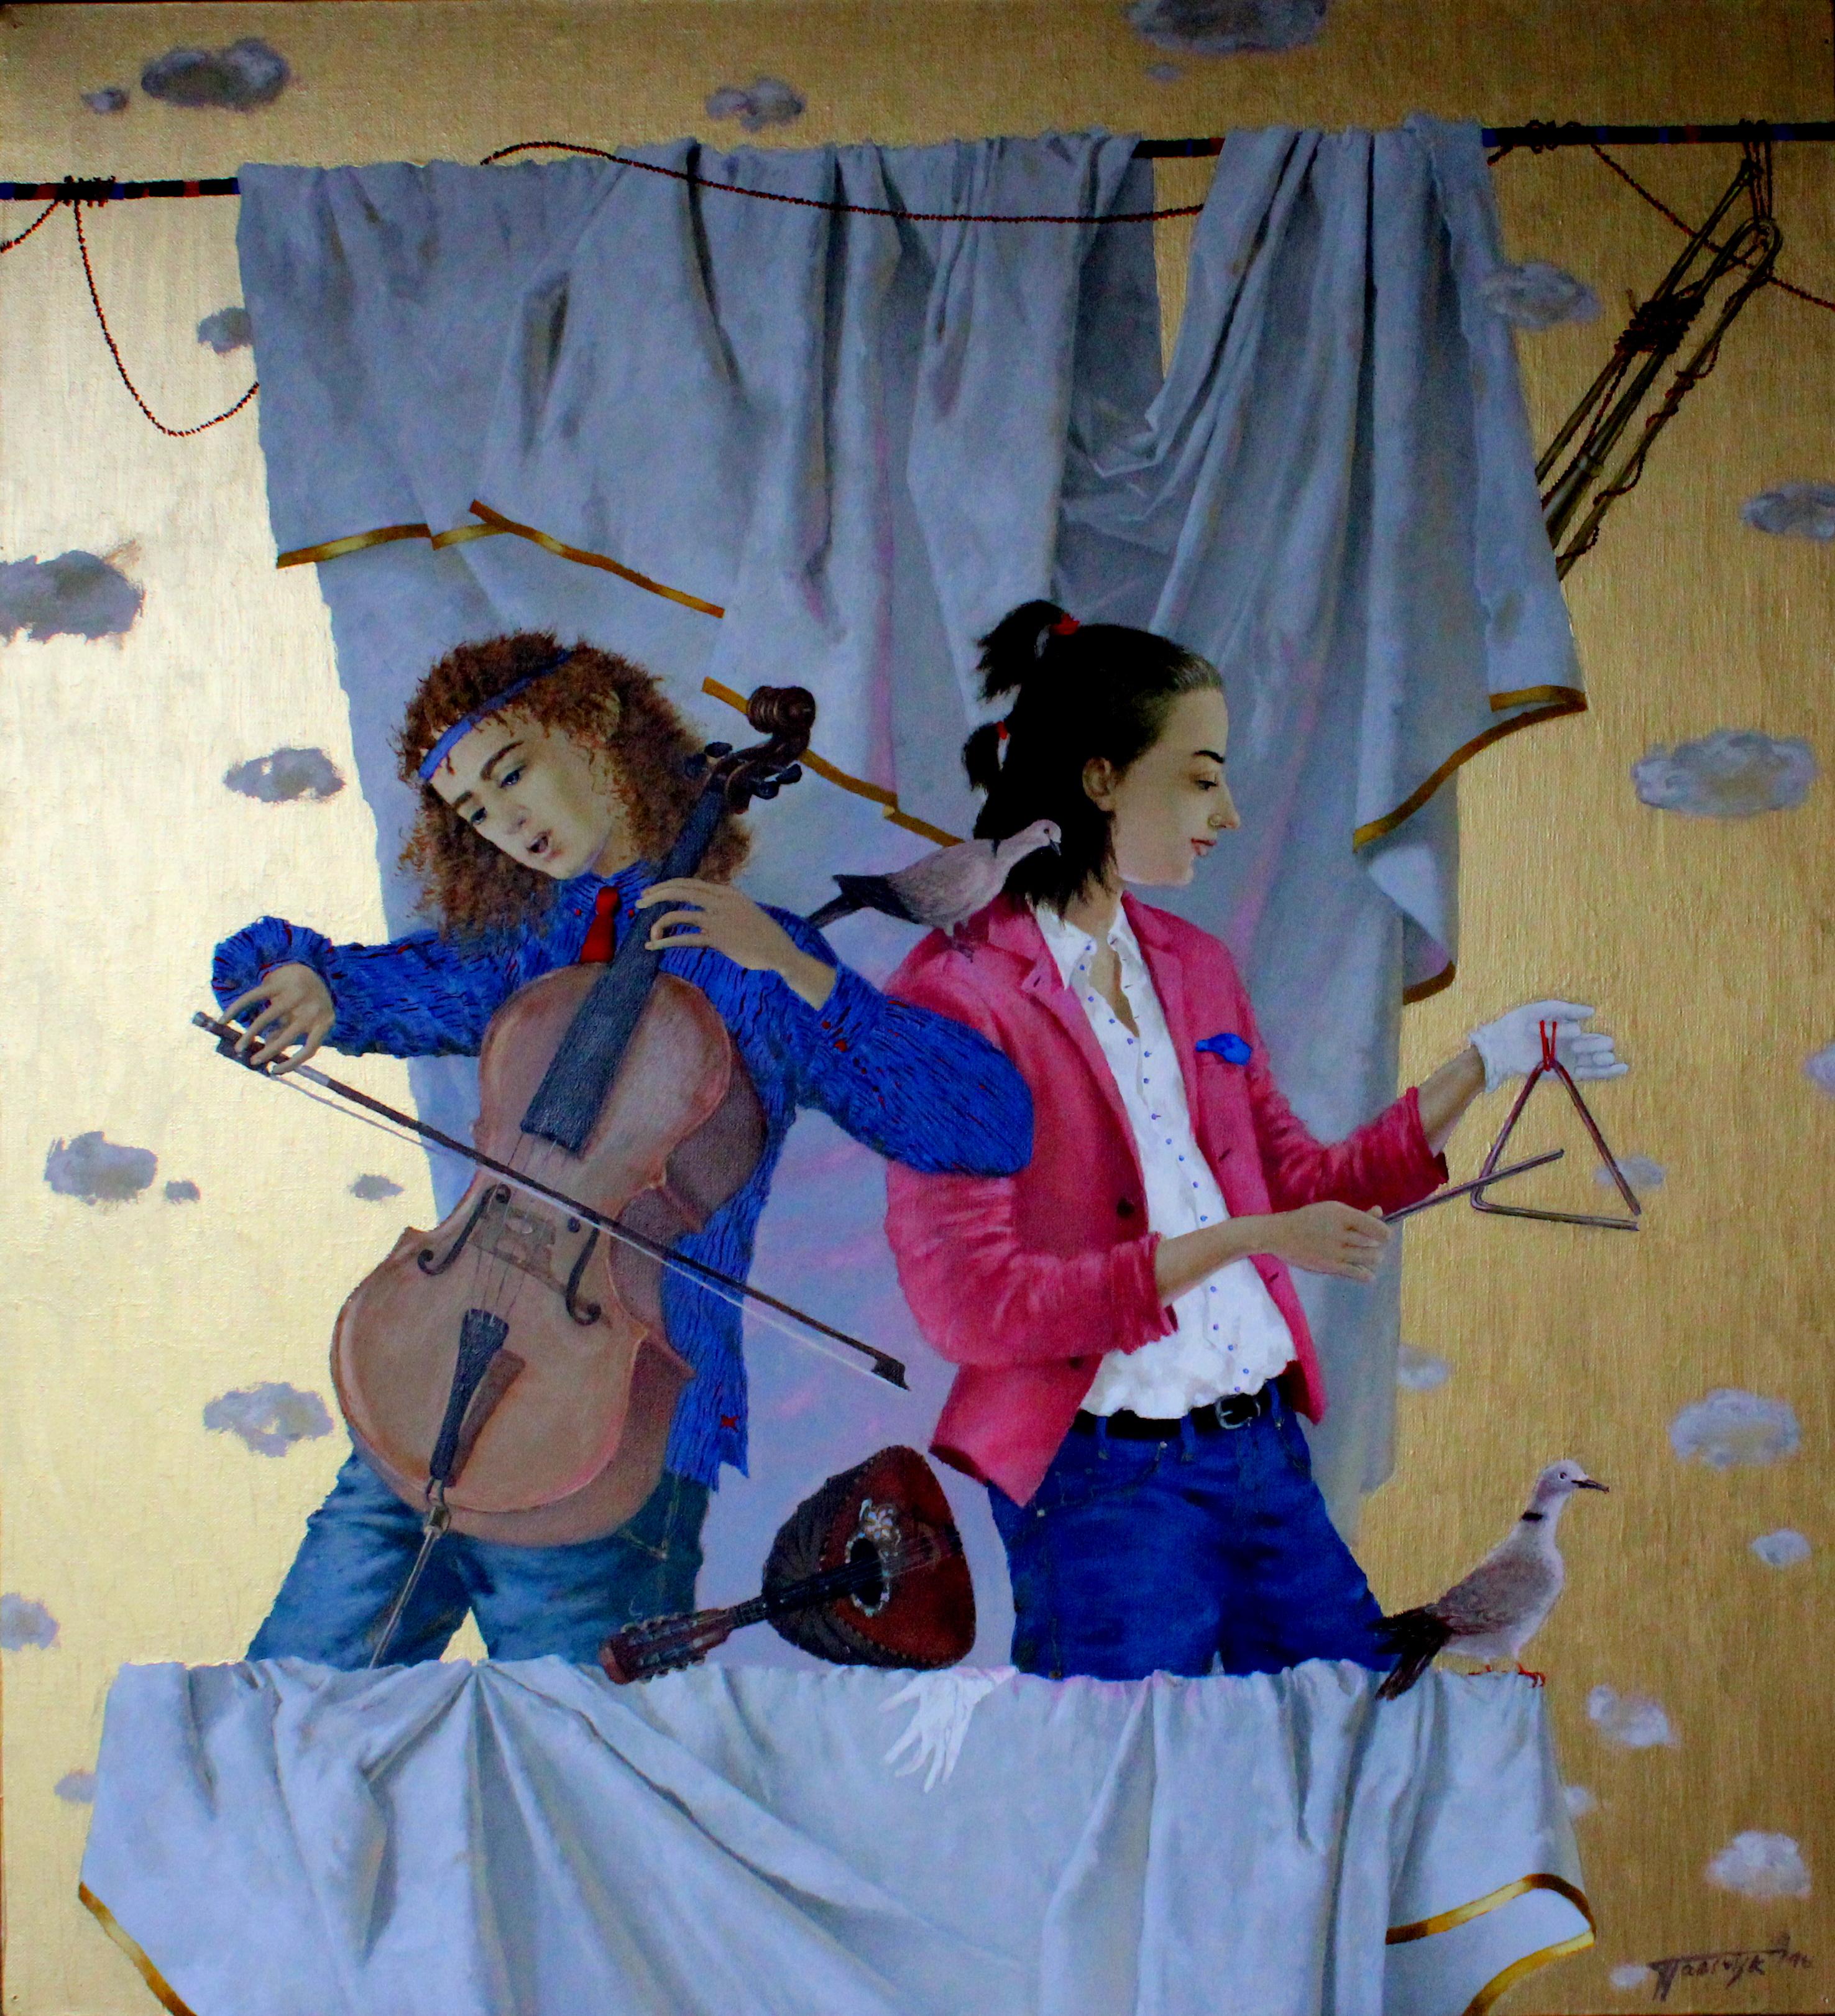 Duo avec violoncelliste. 2016. Huile sur toile, 64 x 70 cm - Painting de Tatyana Palchuk